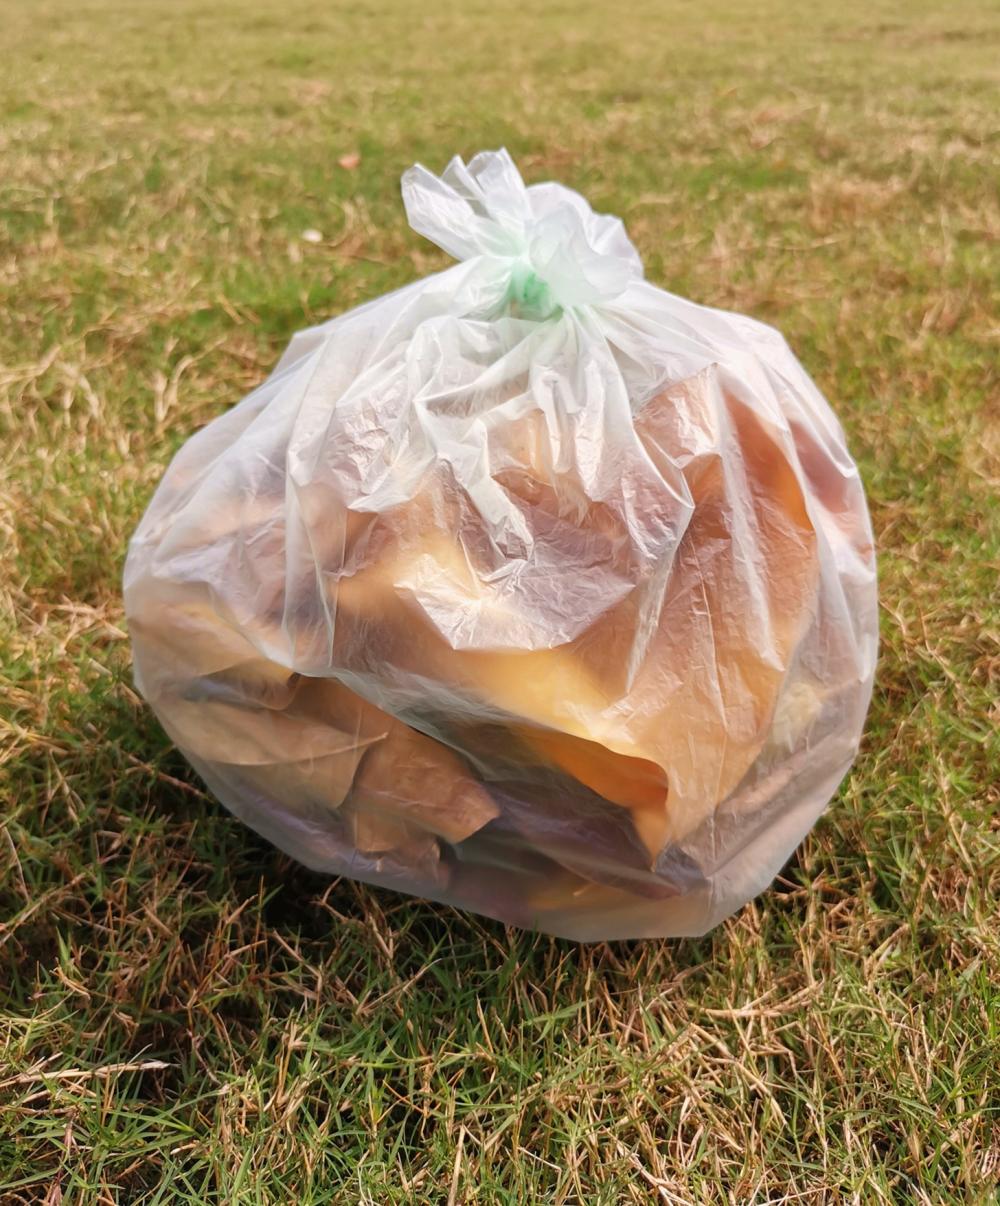 يمكن التخلص منها أكياس القمامة البلاستيكية المستخدمة في الحديقة